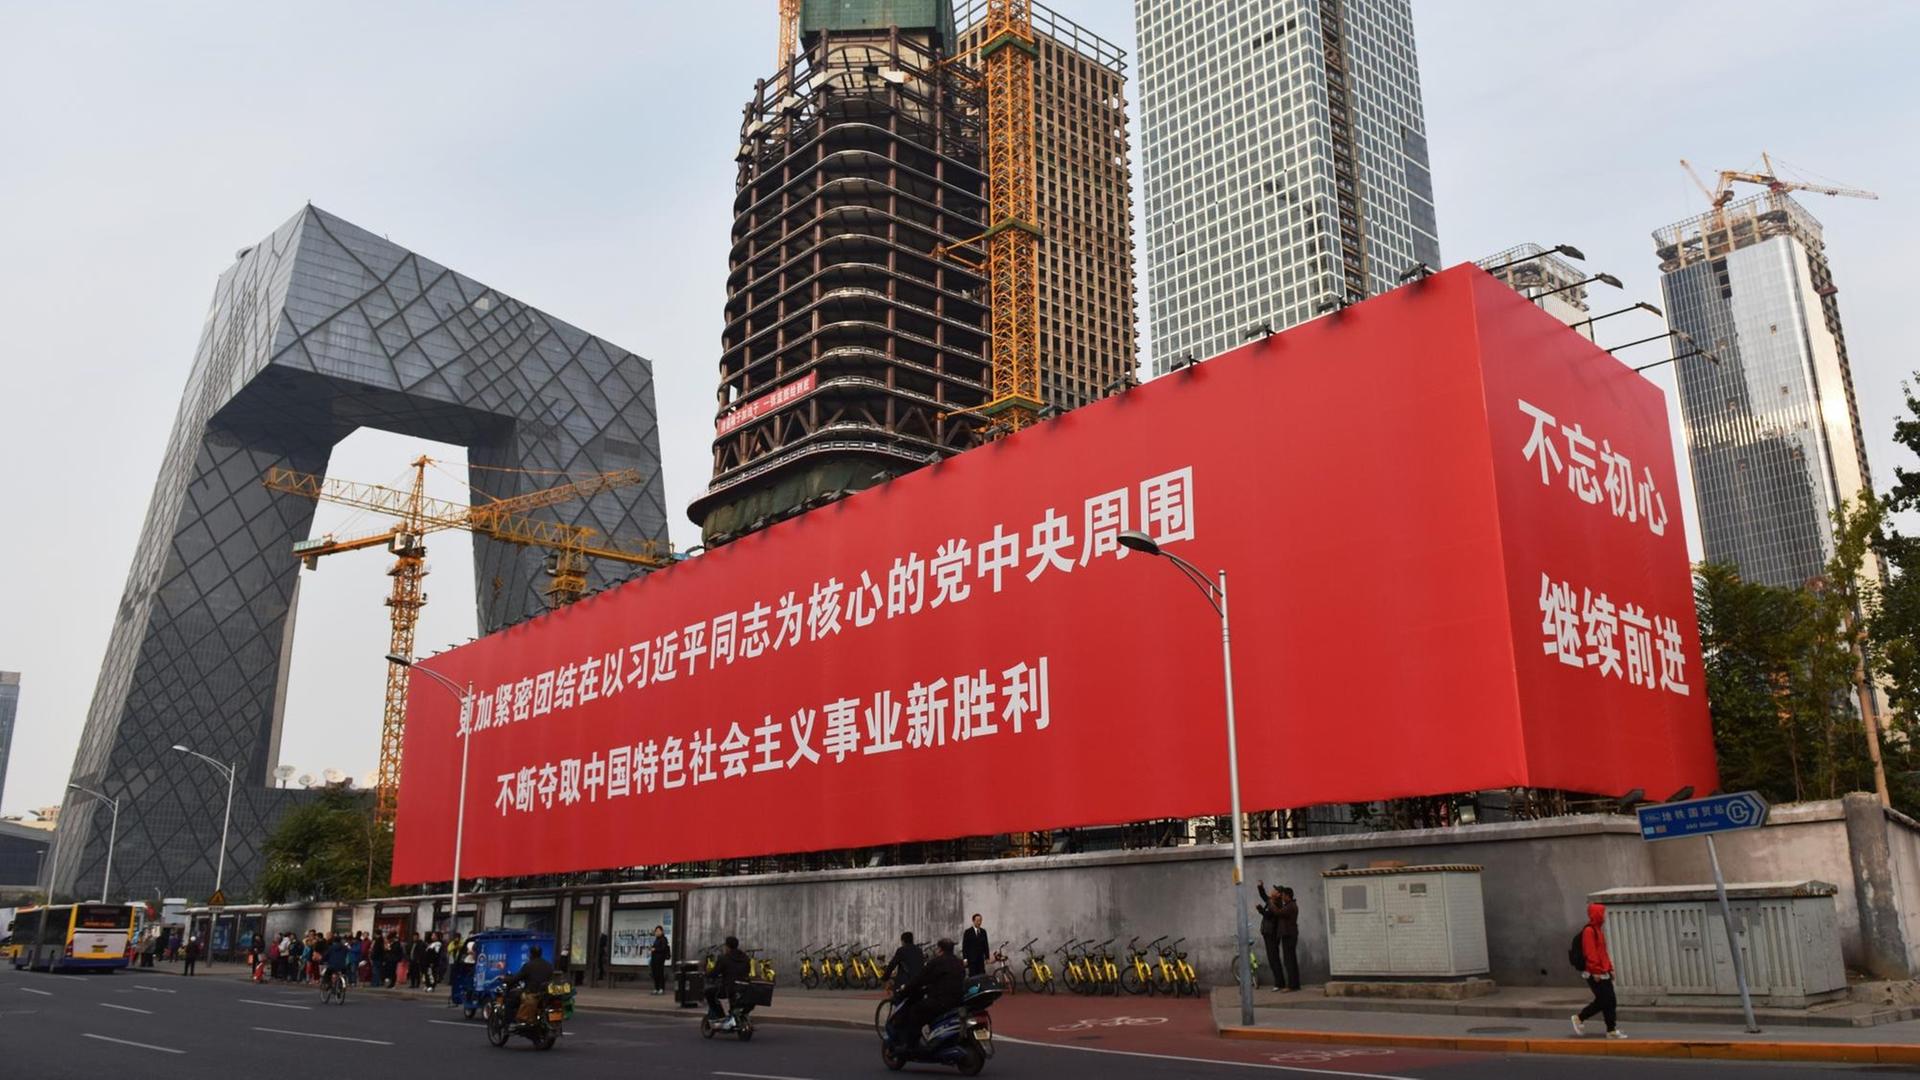 Eine großer Werbekubus in Peking vor eine großen Baustelle.